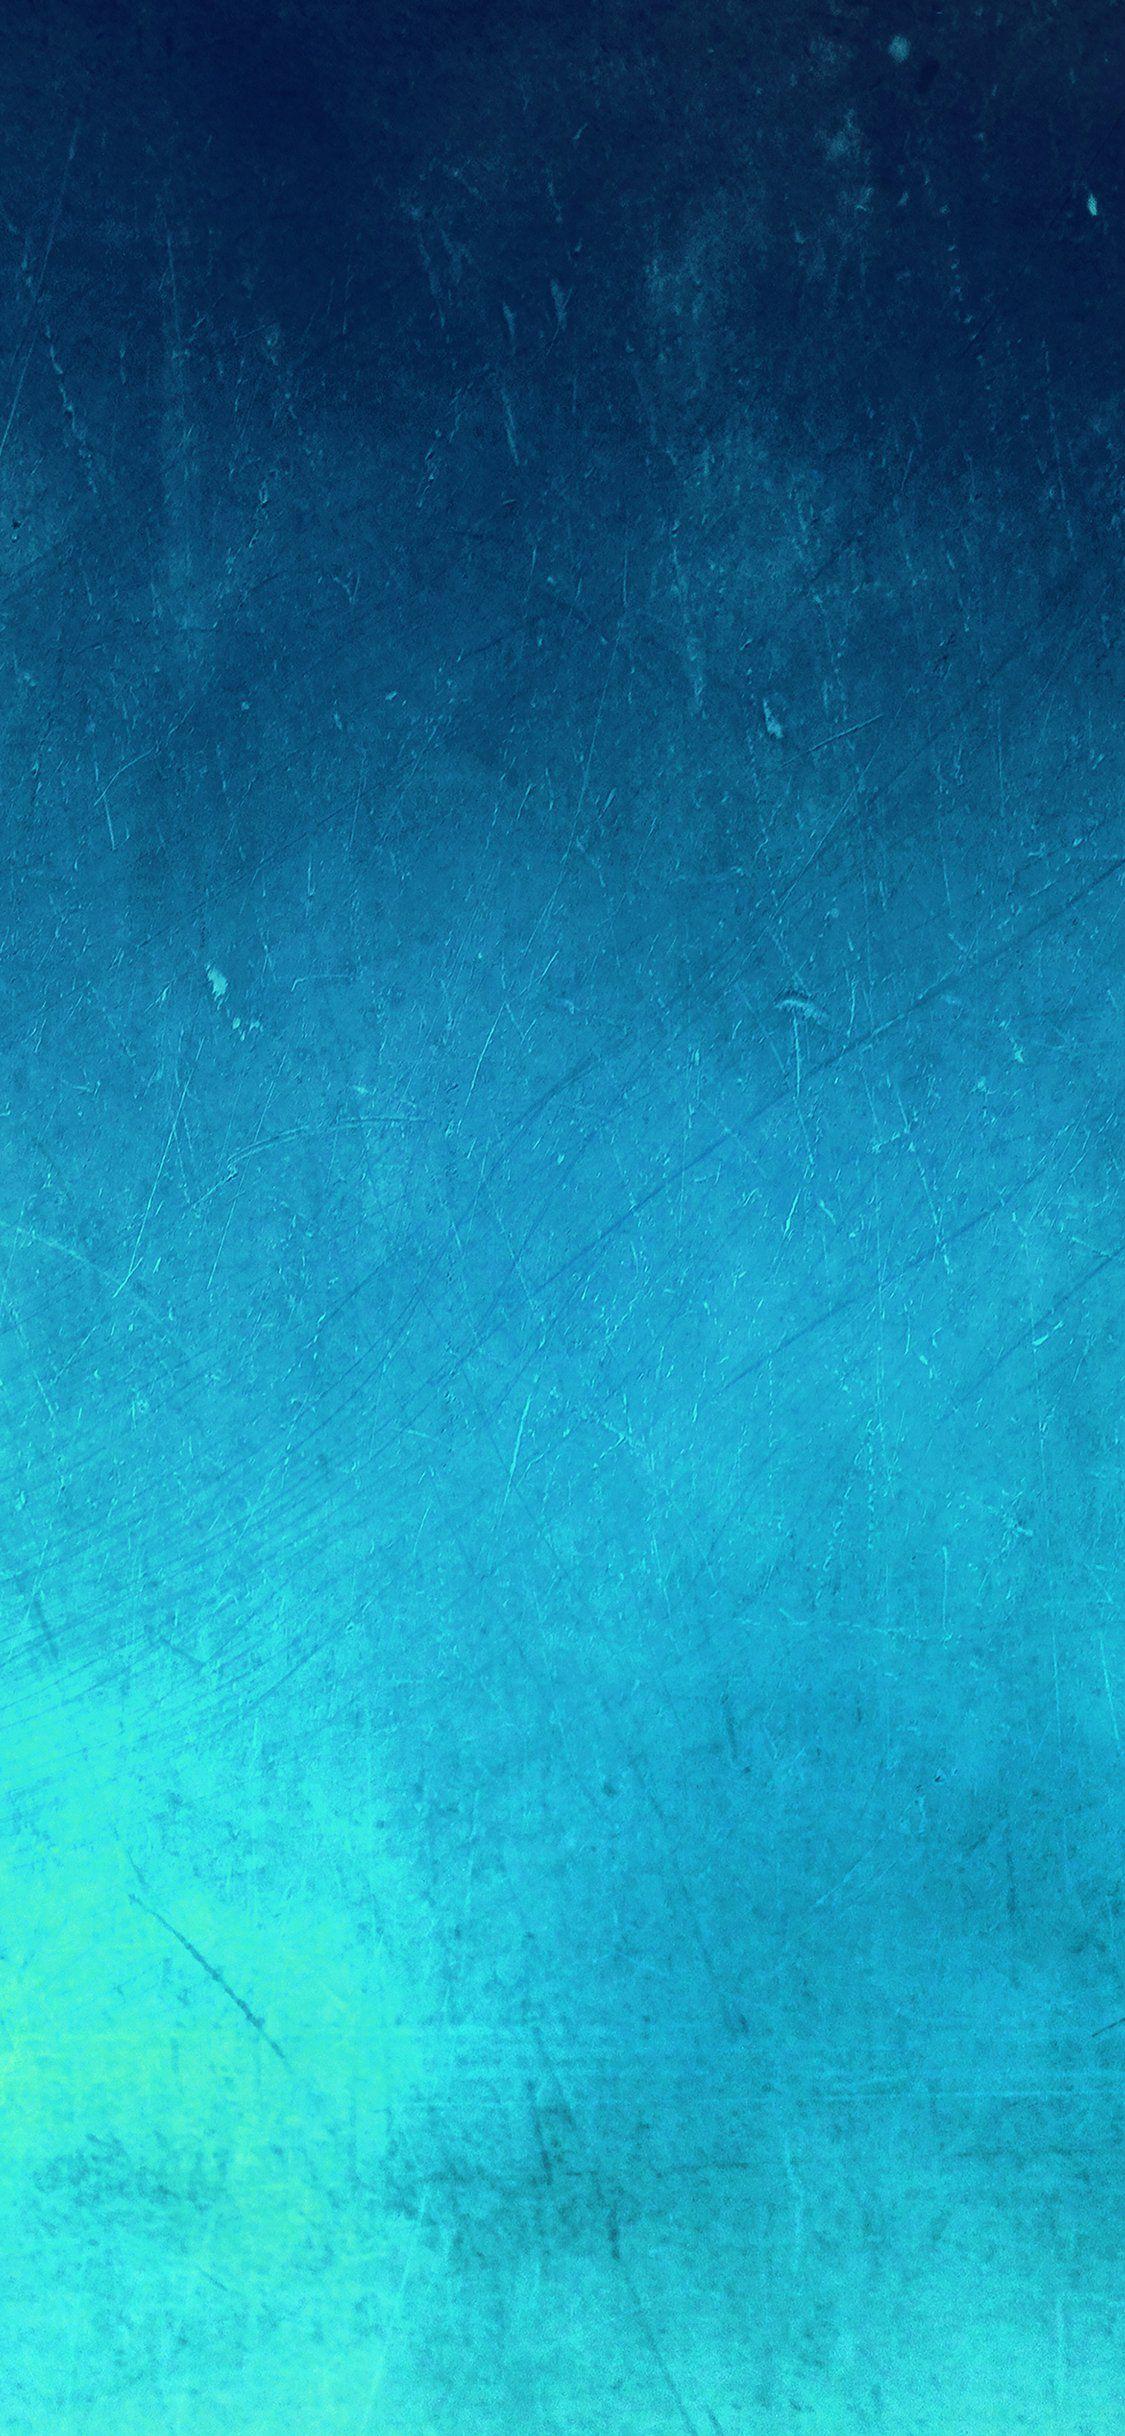 1125x2436 Mô hình kết cấu màu xanh biển bằng đá sa thạch iPhone X